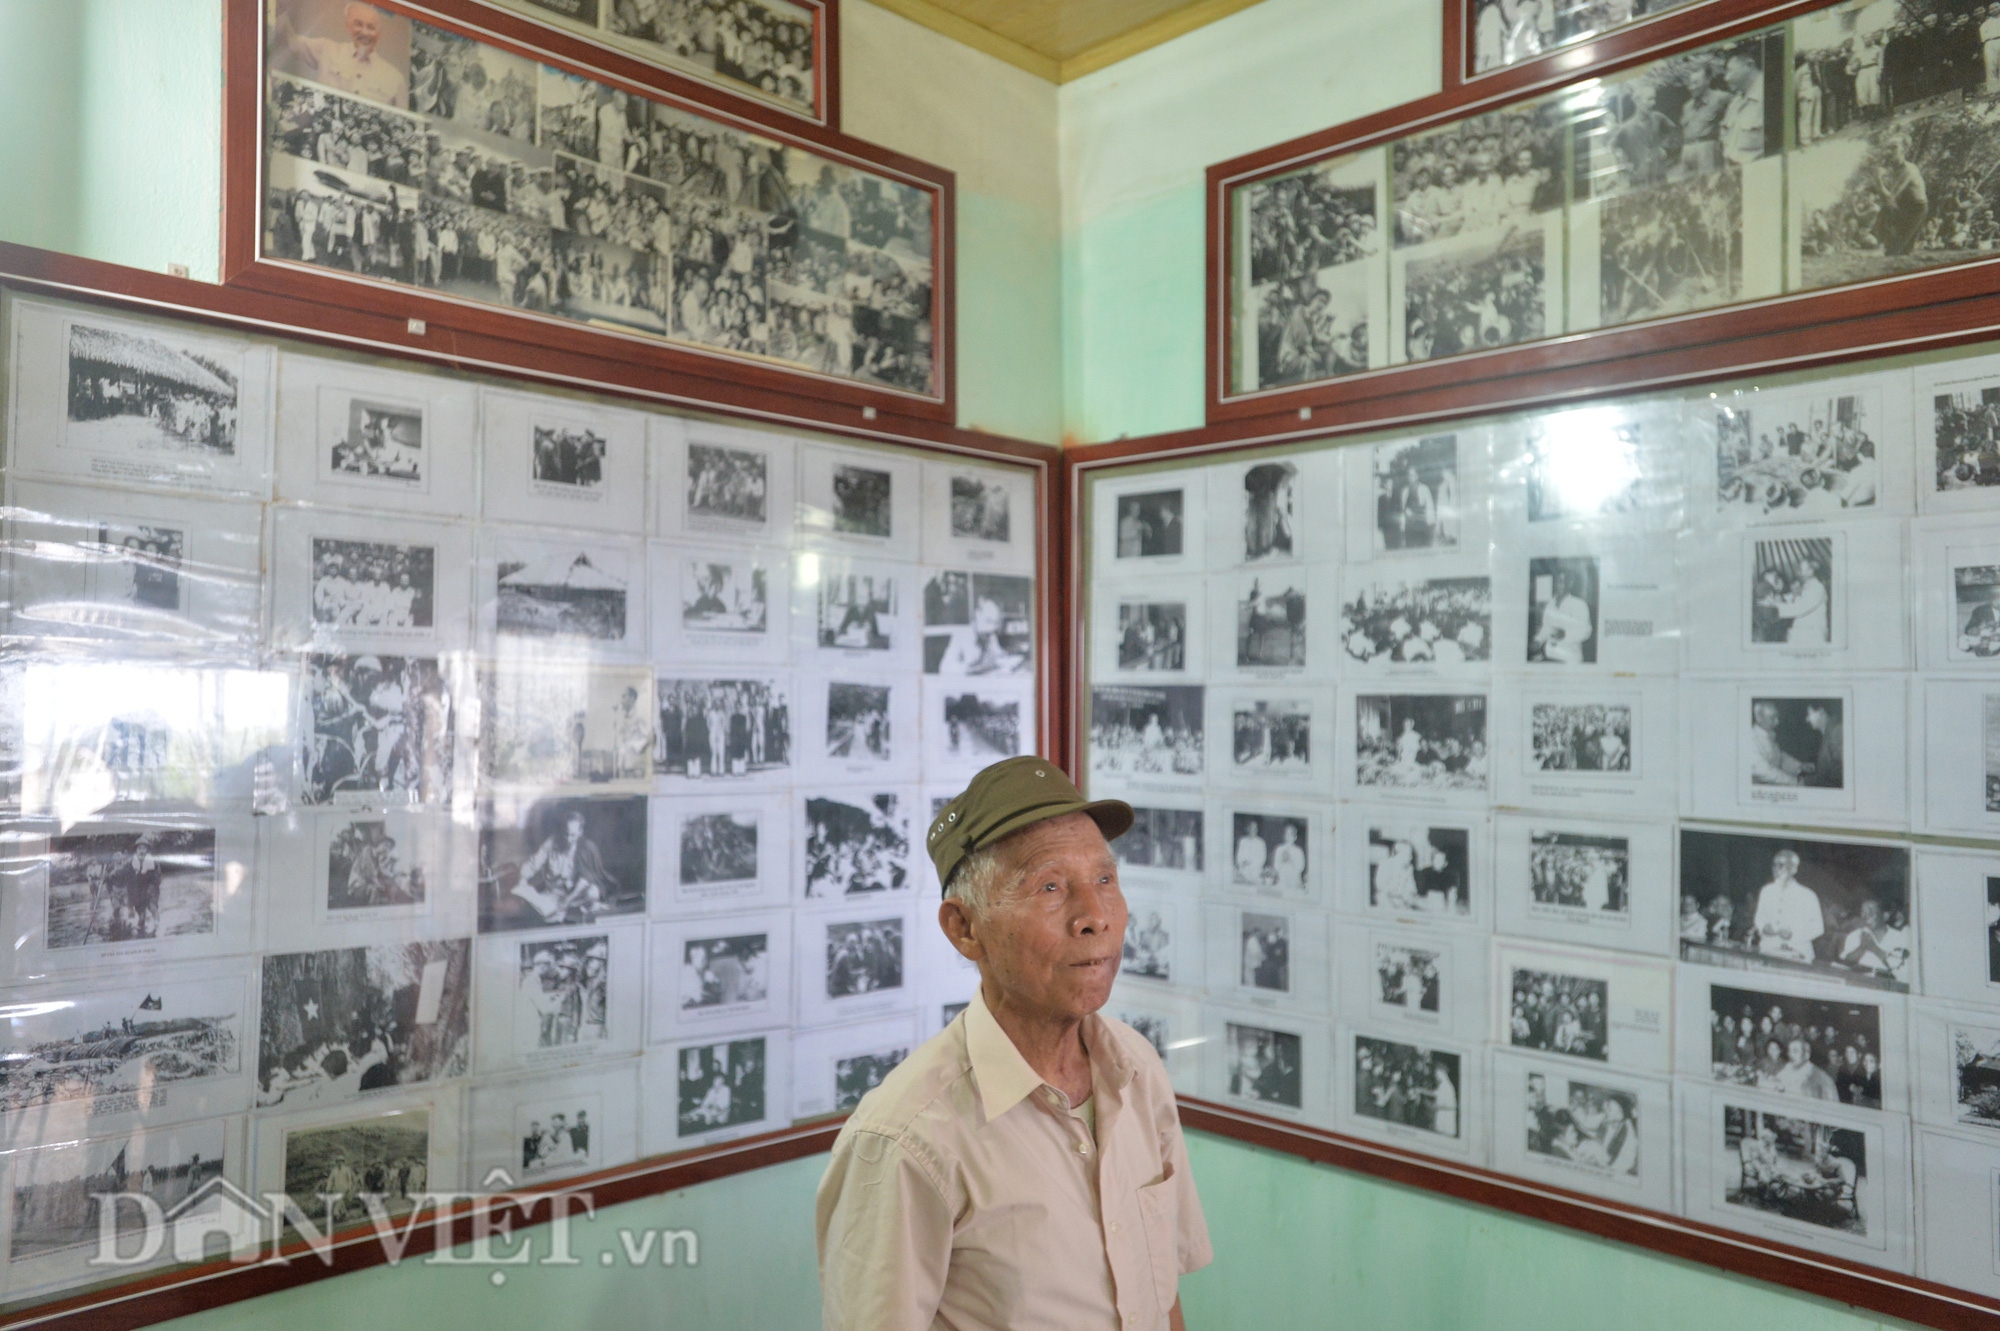 Chiêm ngưỡng bộ sưu tập khủng 300 ảnh về Bác của lão nông Hà Nội - Ảnh 14.